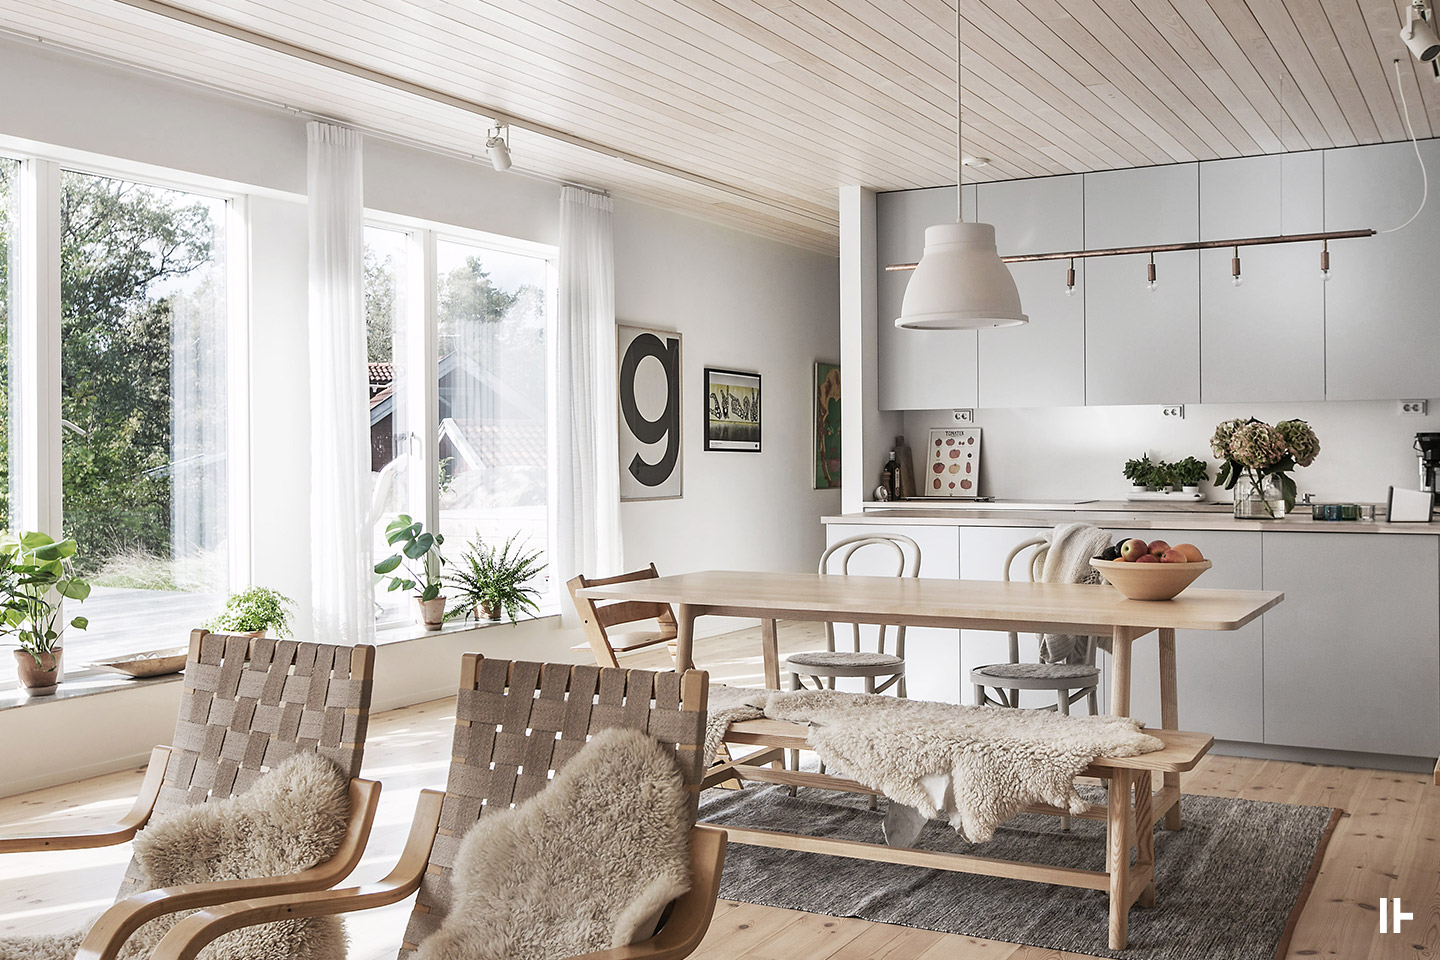 delikatissen estilo nórdico decoración nórdica decoración madera natural decoración colores claros casa sueca casa arquitecto 